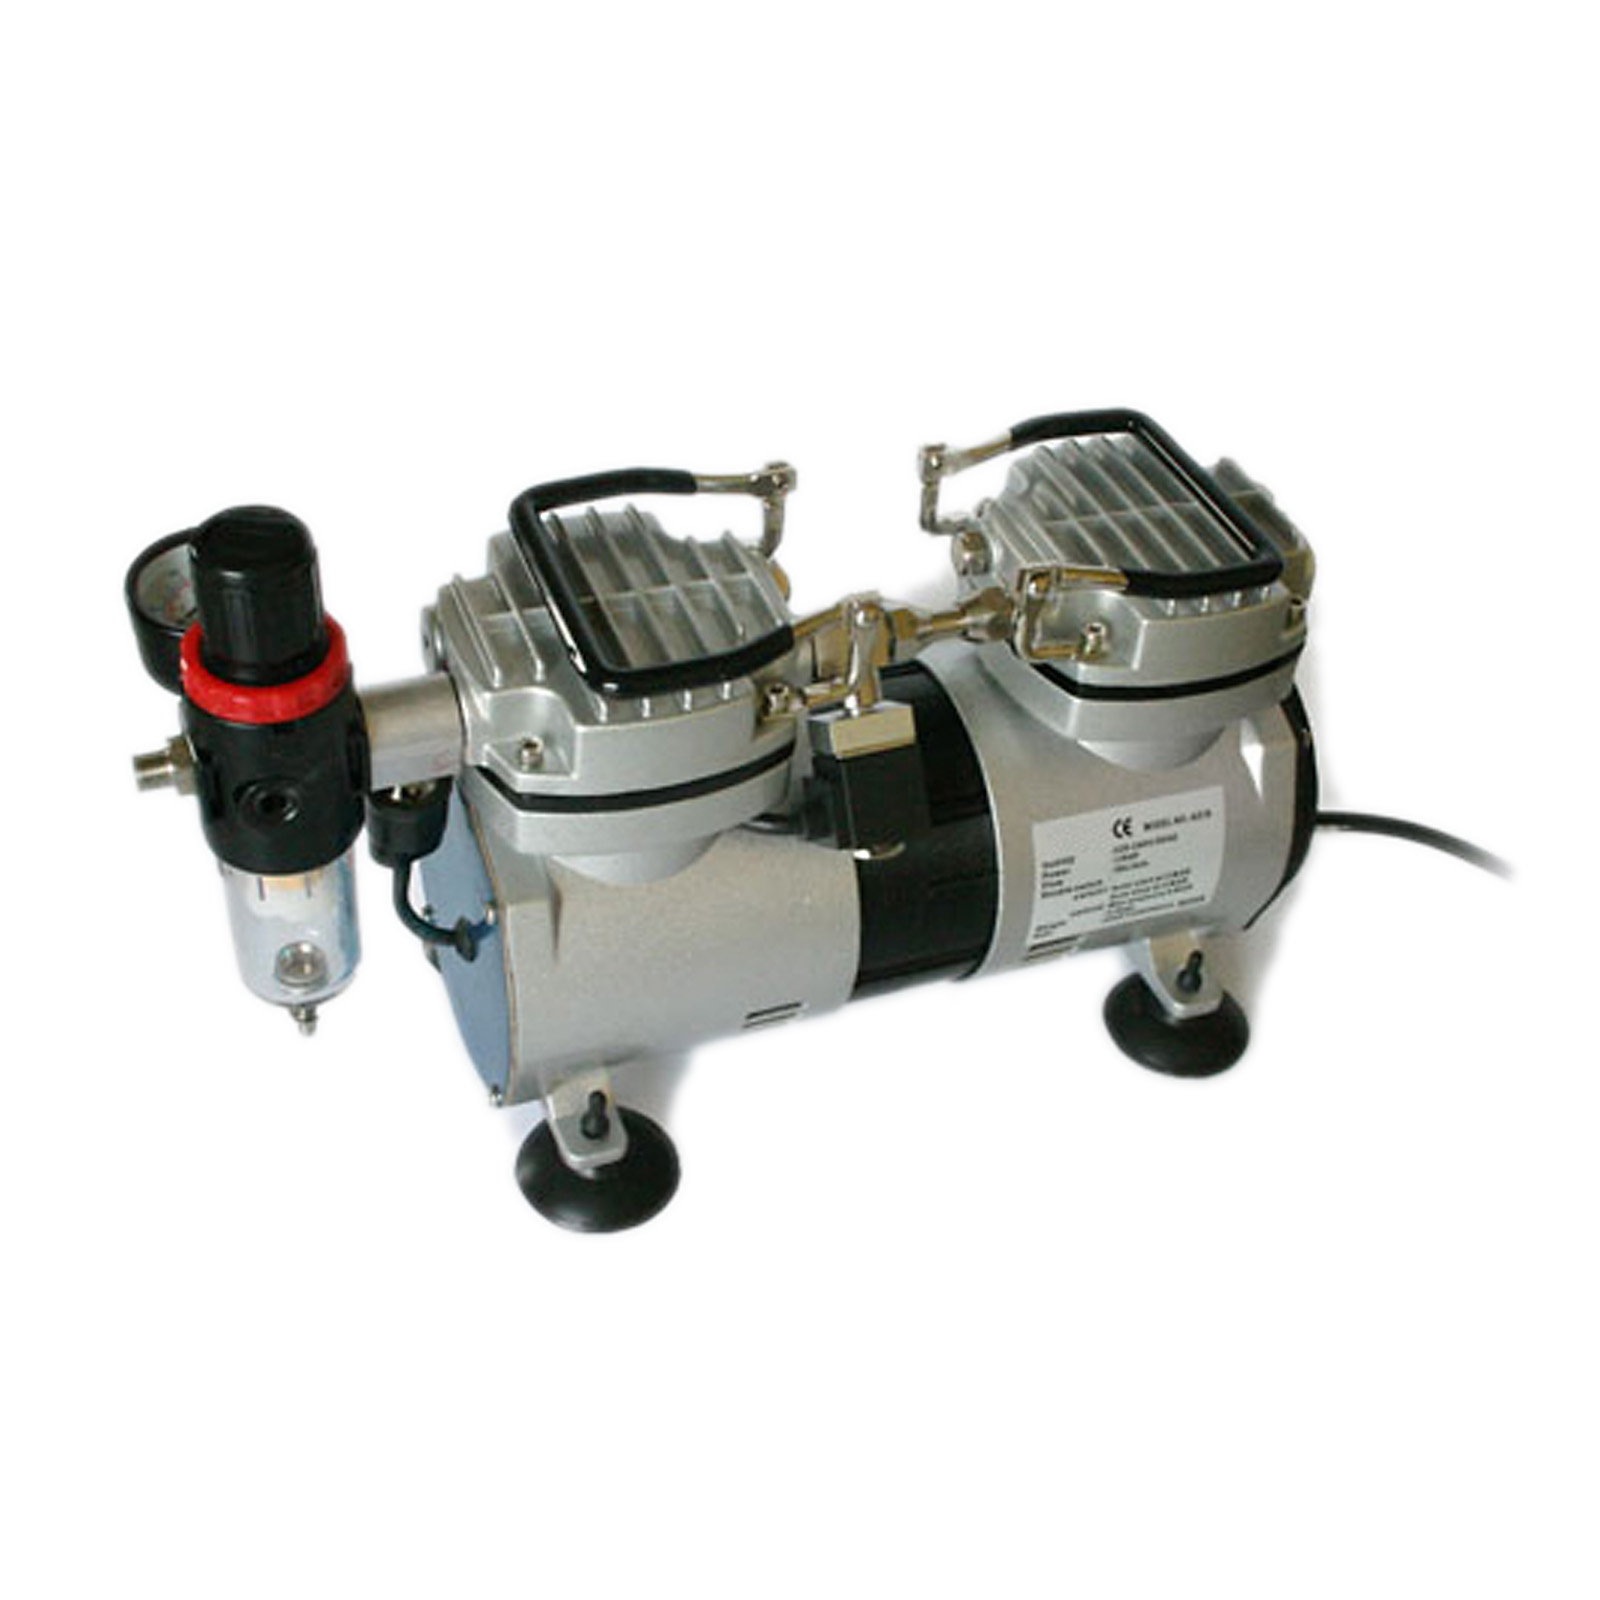 Airbrush Kompressor AS19 2 Zylinder Kolben Wasserabscheider